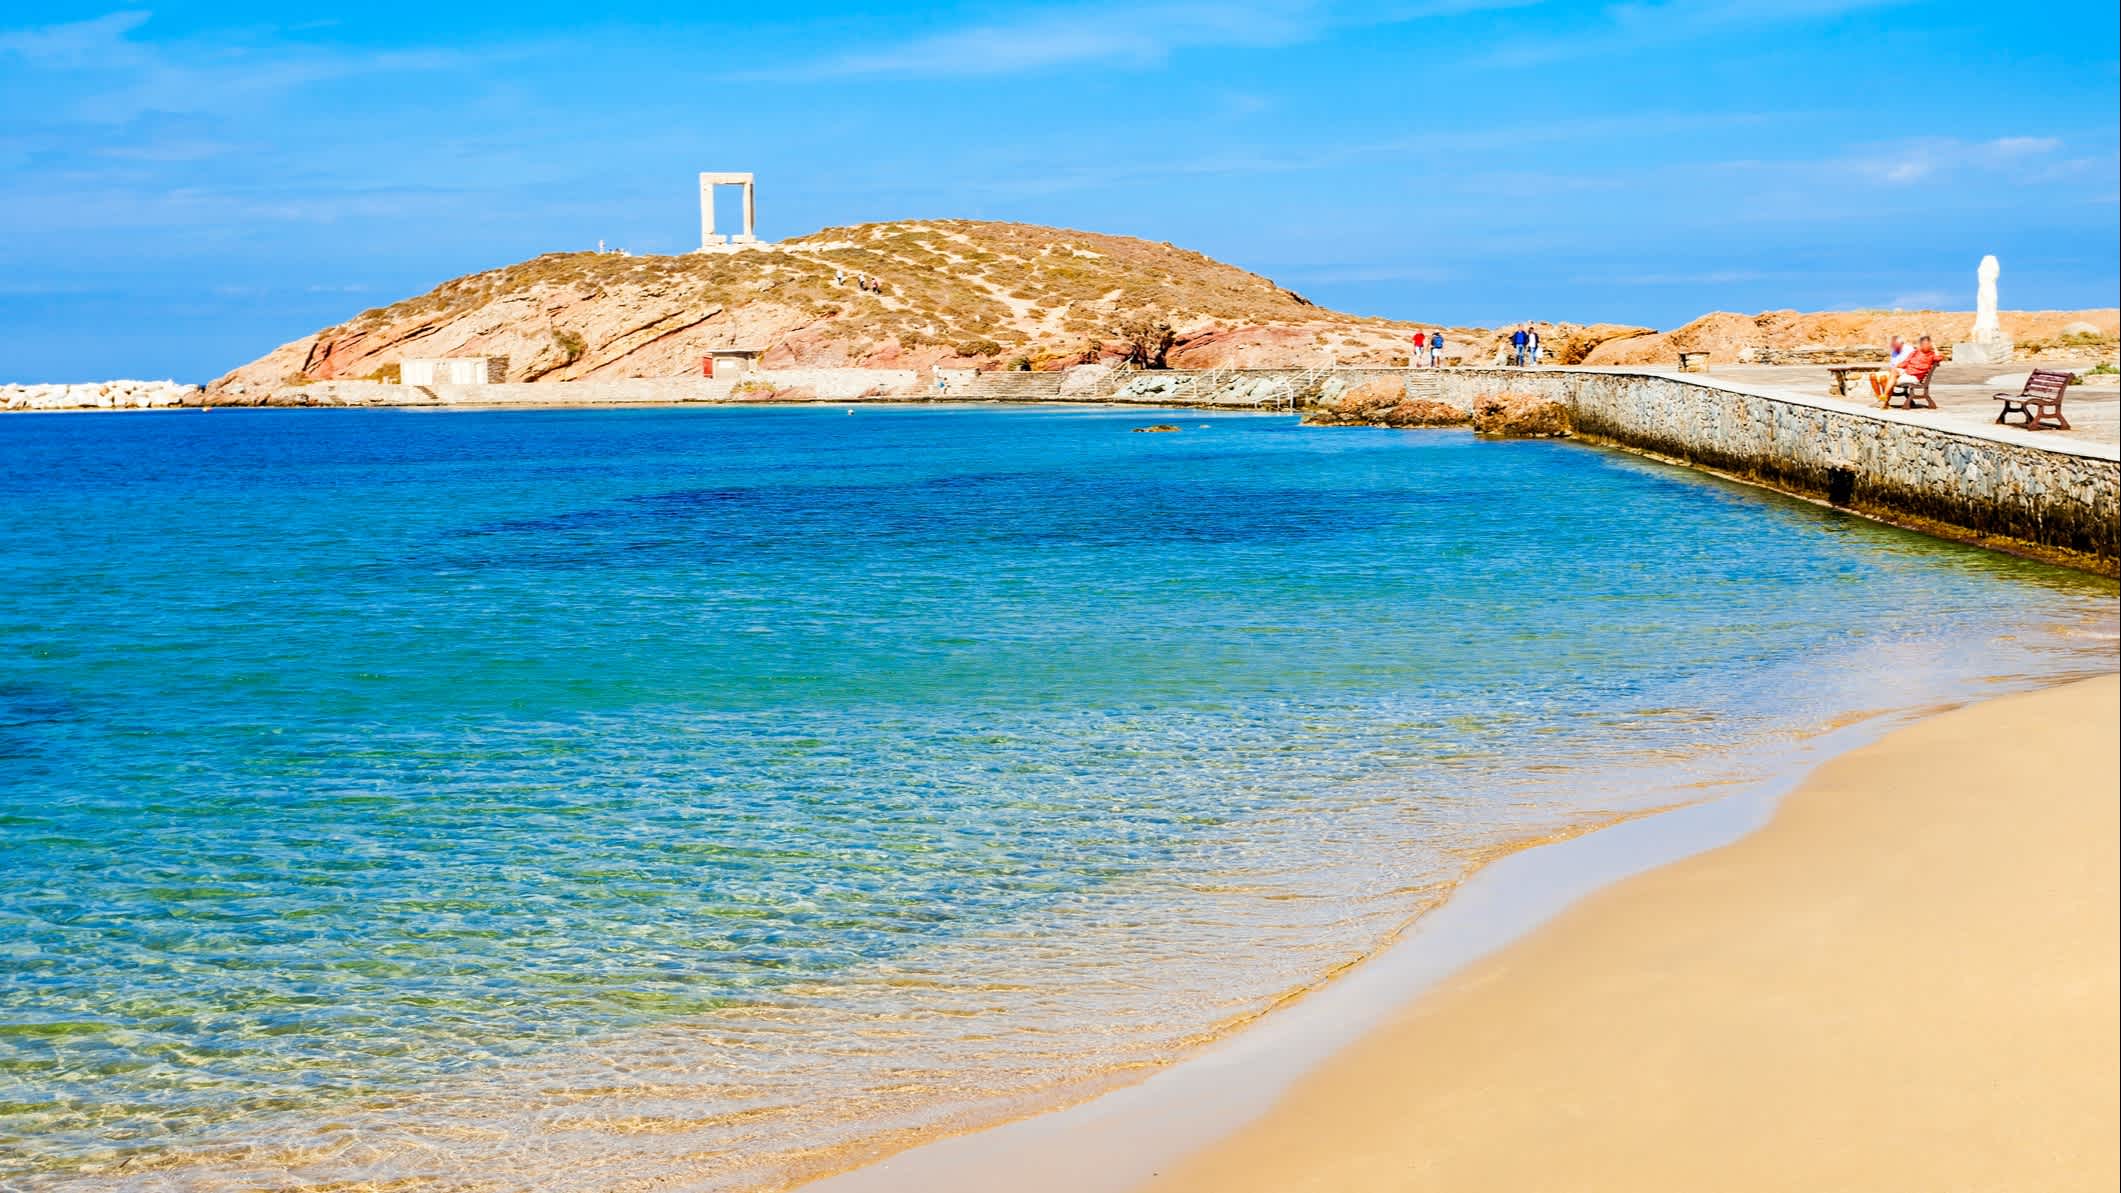 Sandstrand auf Naxos mit türkisblauem Meer und der Portara von Naxos im Hintergrund.